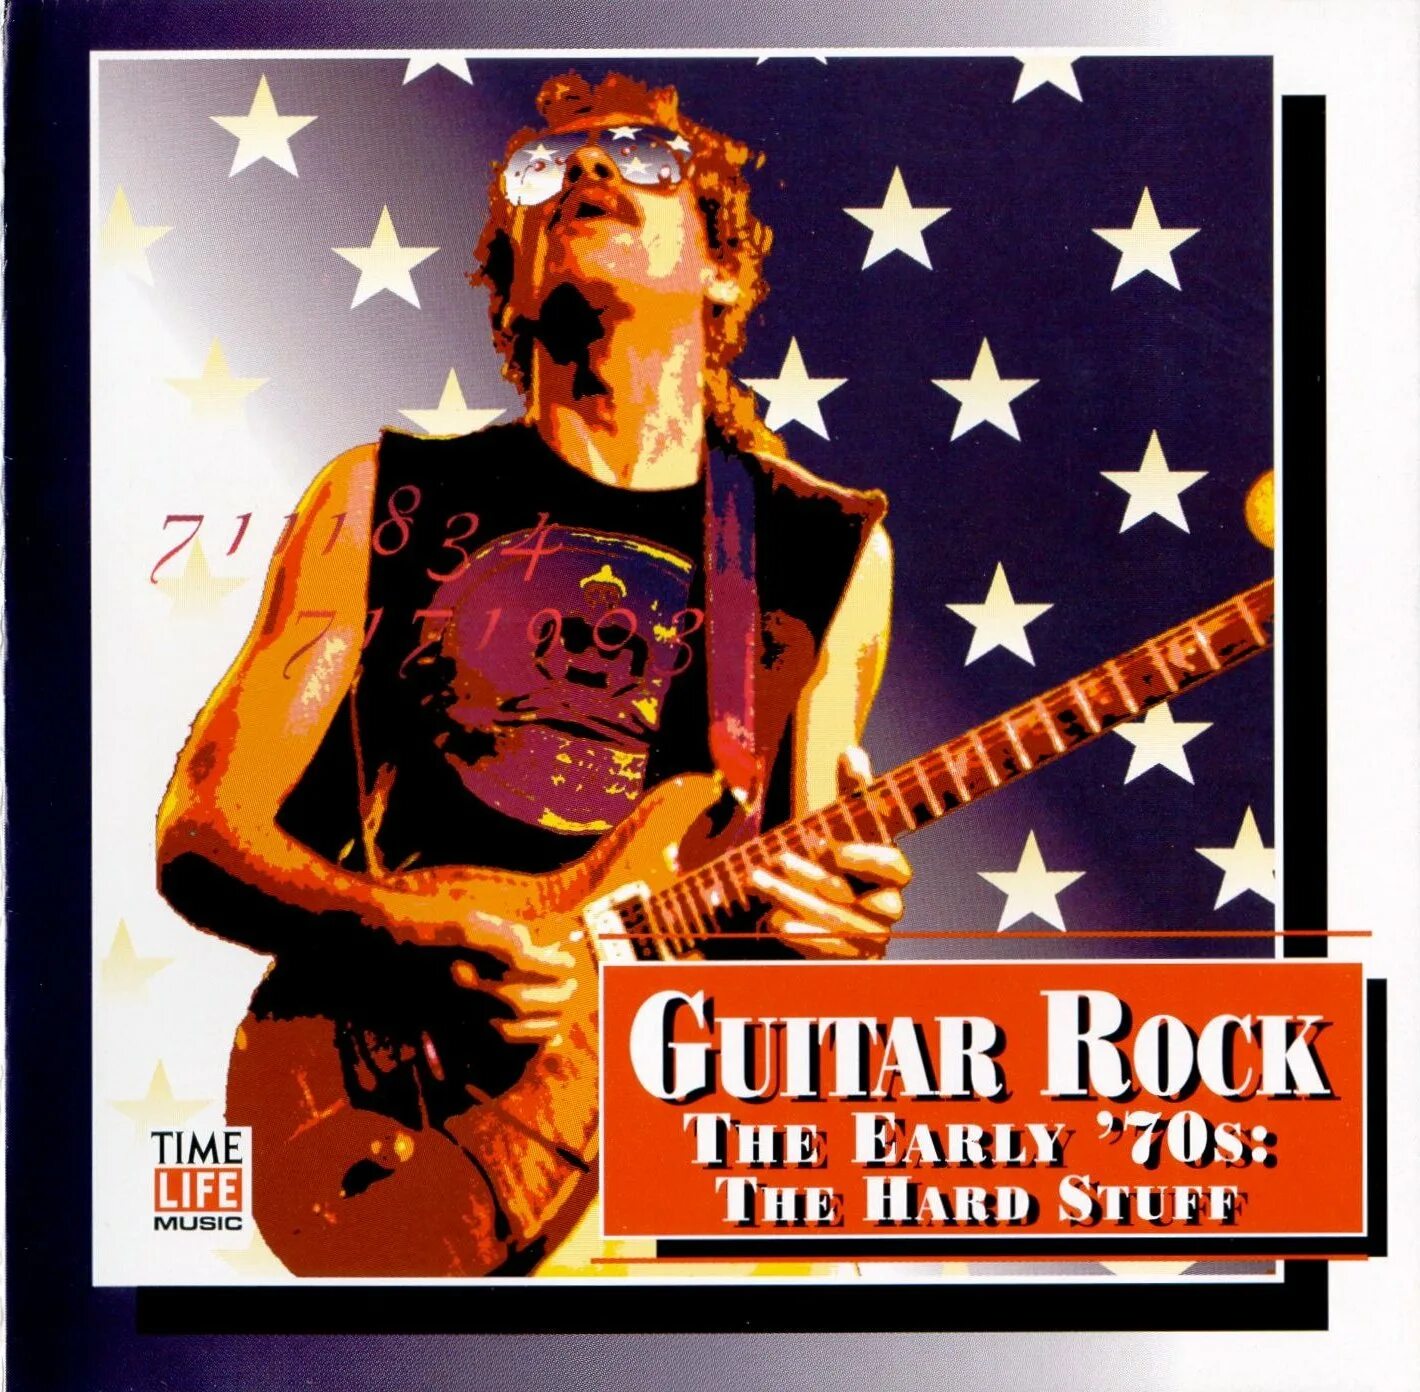 Guitar Rock - the early 70's. Rock 70s. Va - time Life - Guitar Rock. Steve Miller Band обложки альбомов.